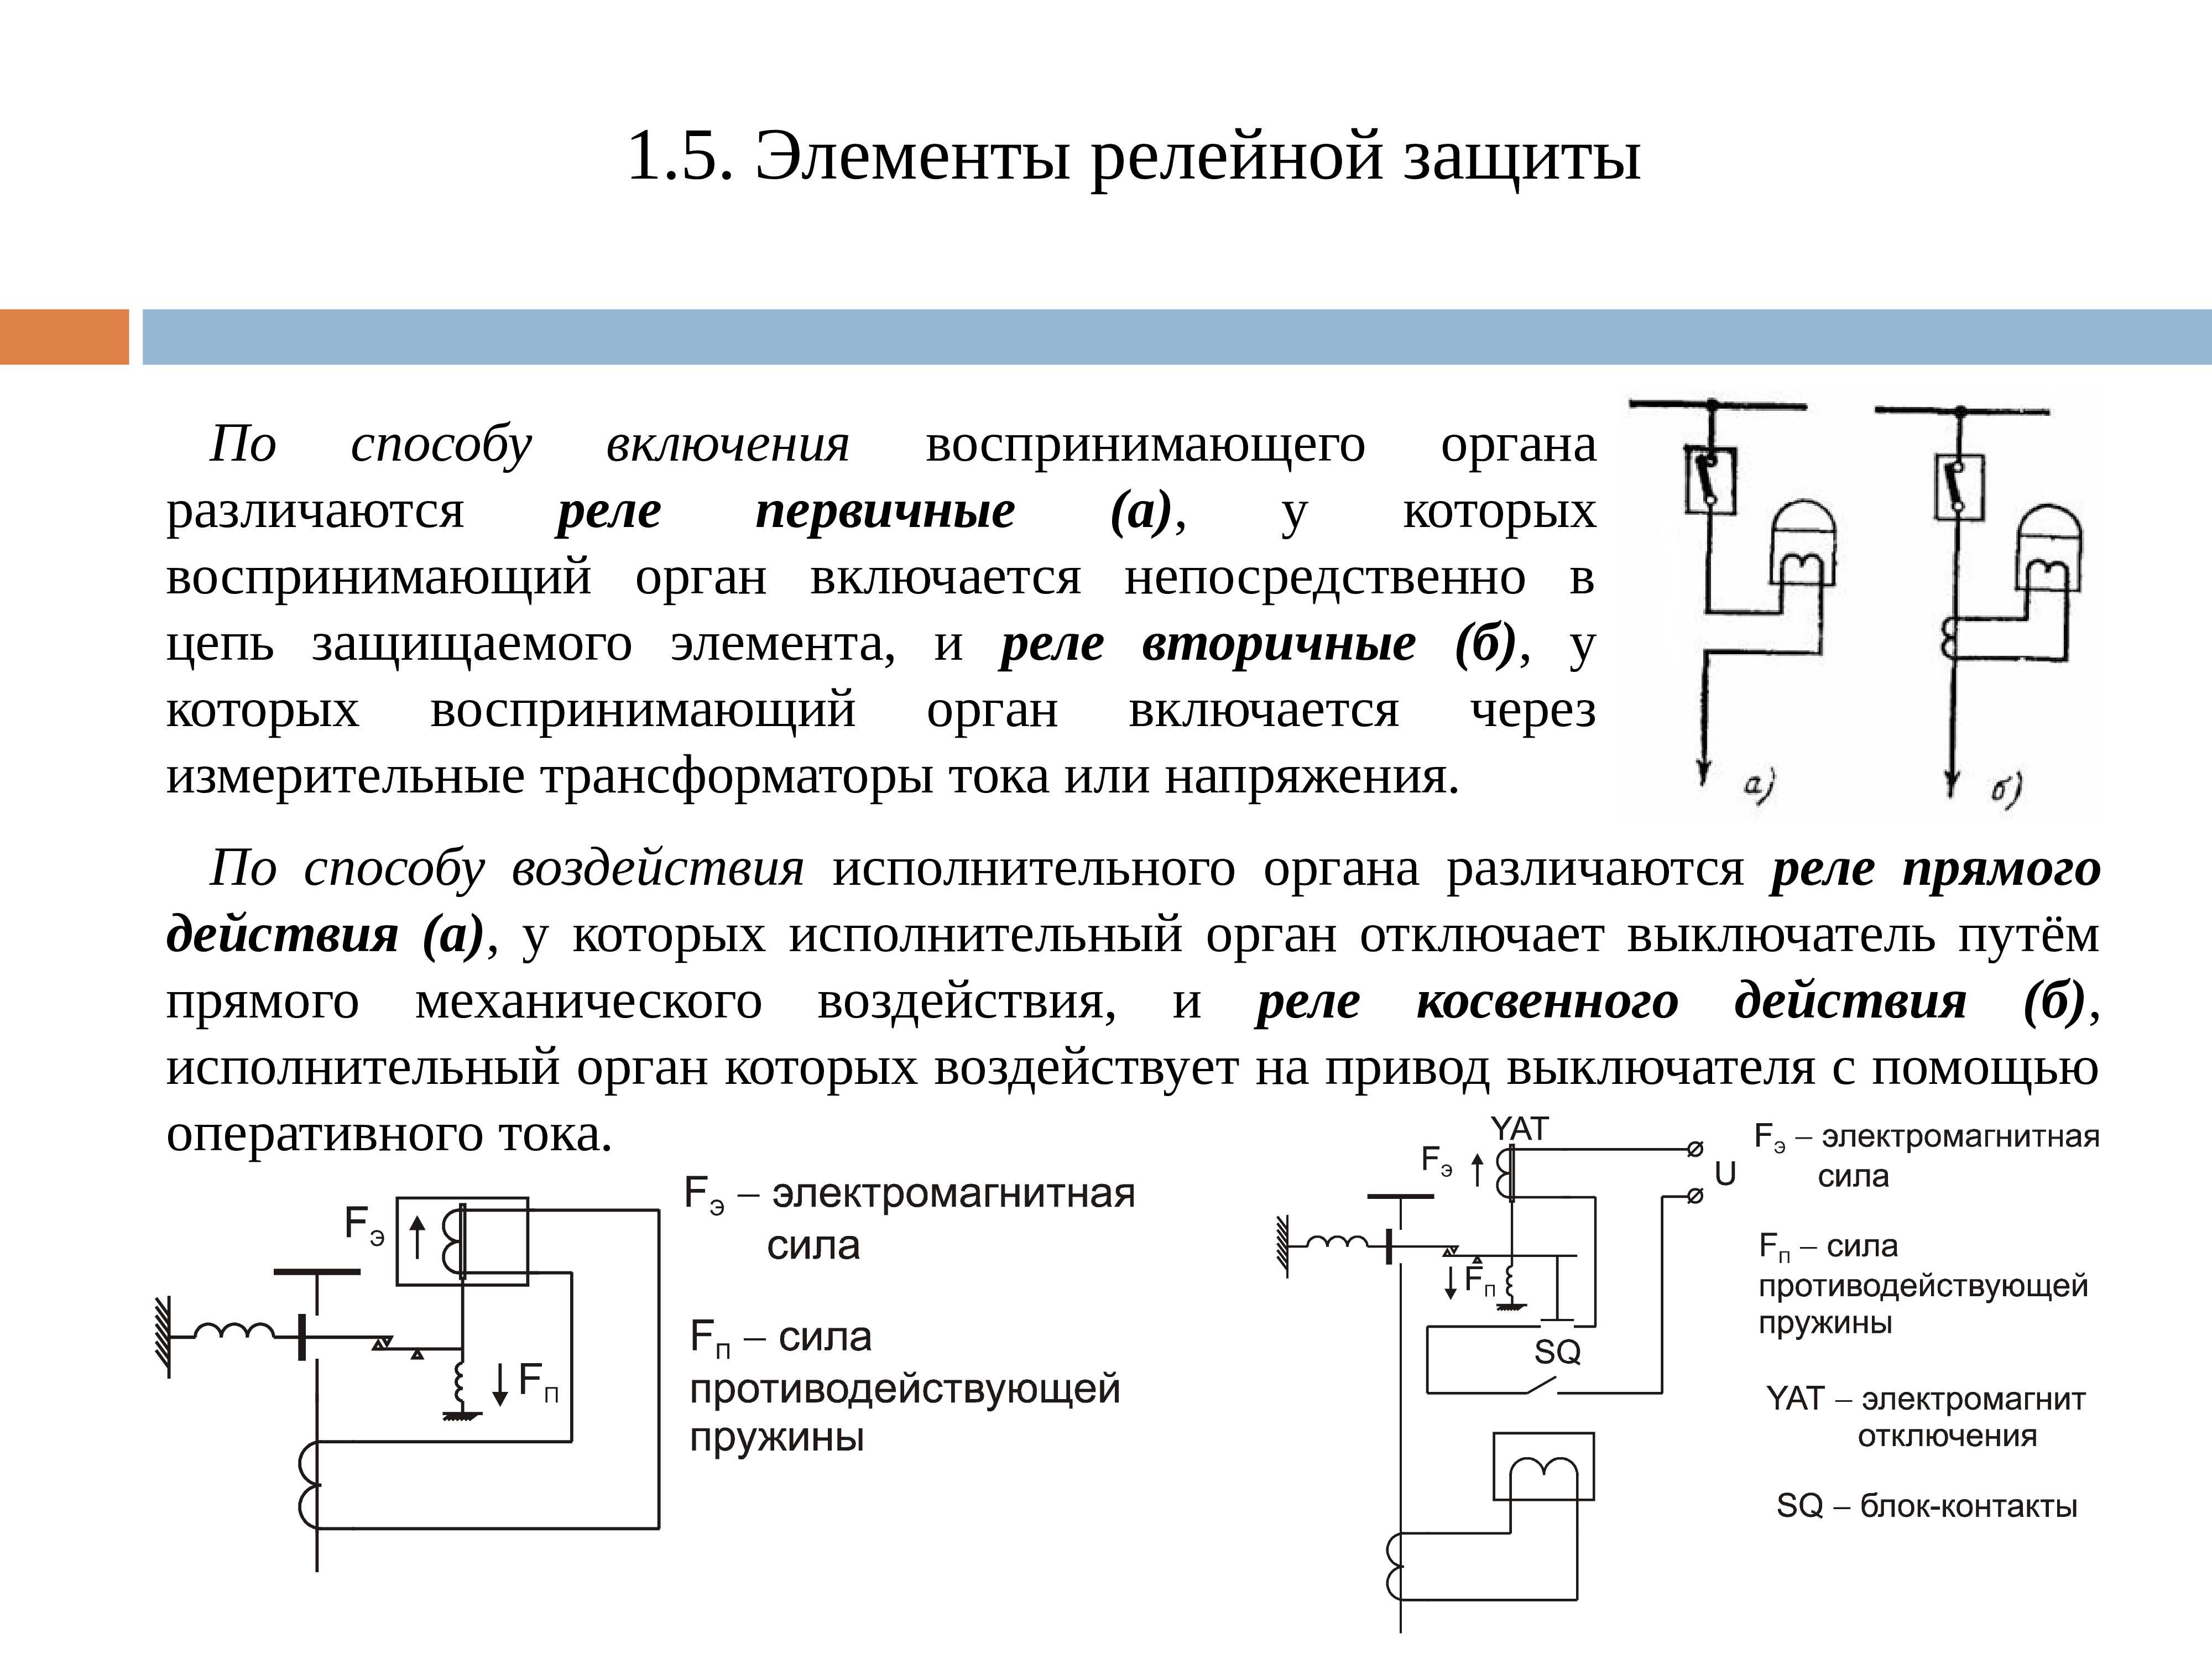 Назаров а.и. электрические аппараты и оборудование напряжением выше 1000 в. учебное пособие - файл n1.doc